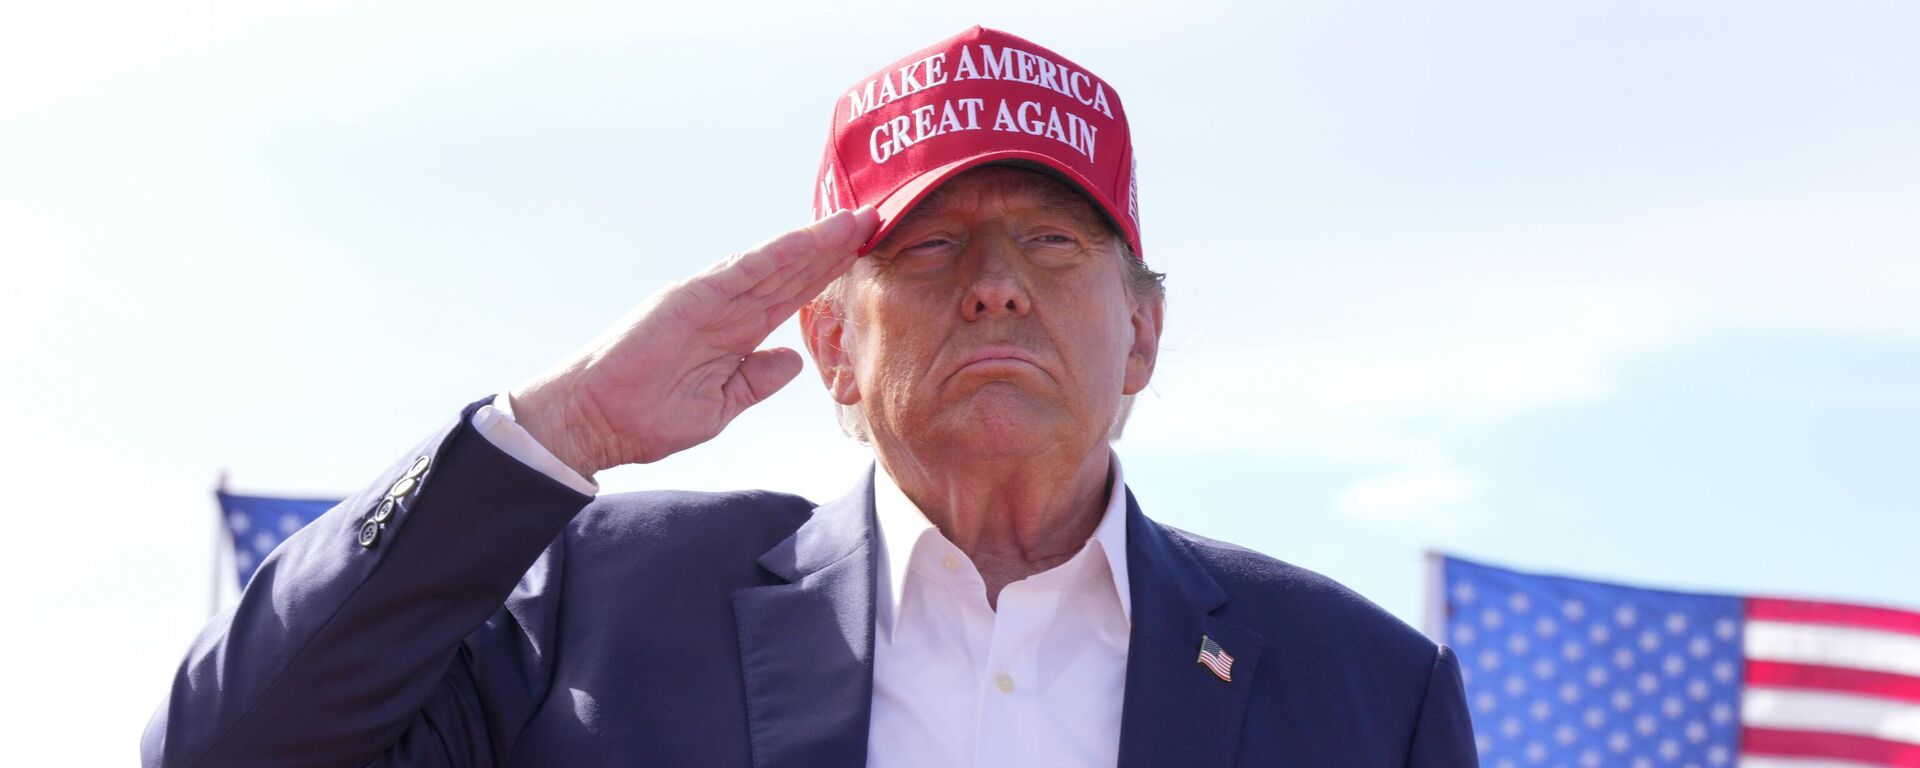 Donald Trump, candidato presidencial republicano y expresidente, saluda durante un acto de campaña el 16 de marzo de 2024, en Vandalia, Ohio - Sputnik Mundo, 1920, 02.04.2024